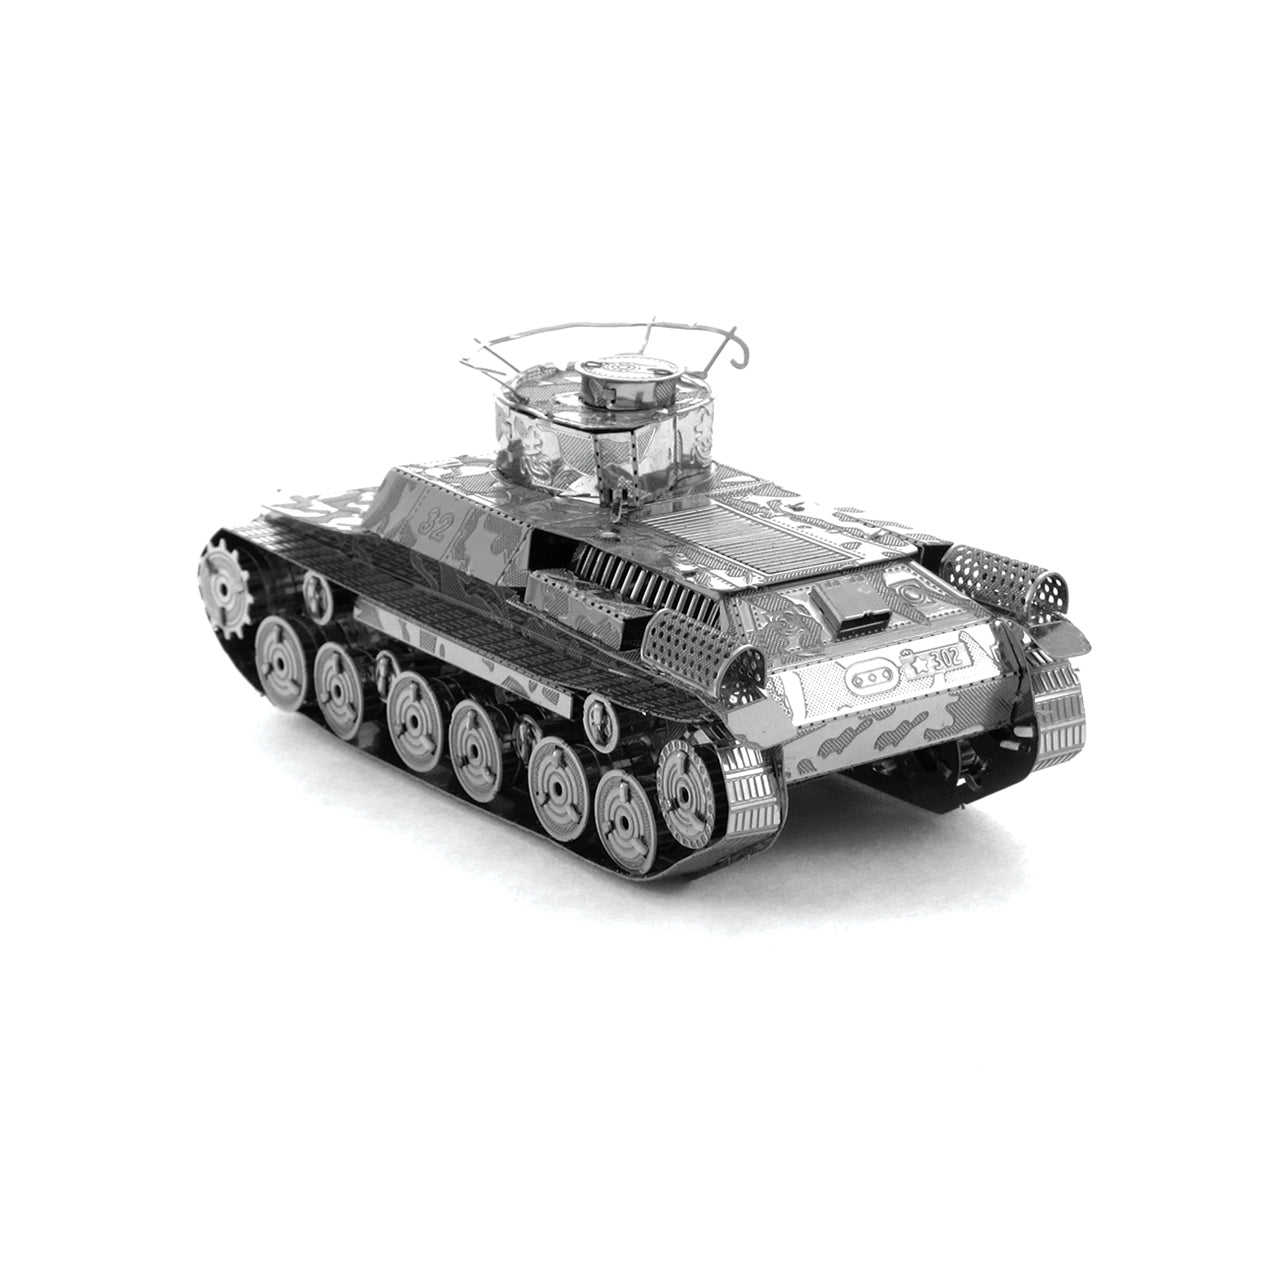 FMW202 ची हा टैंक (निर्माण योग्य) (बंद मॉडल)